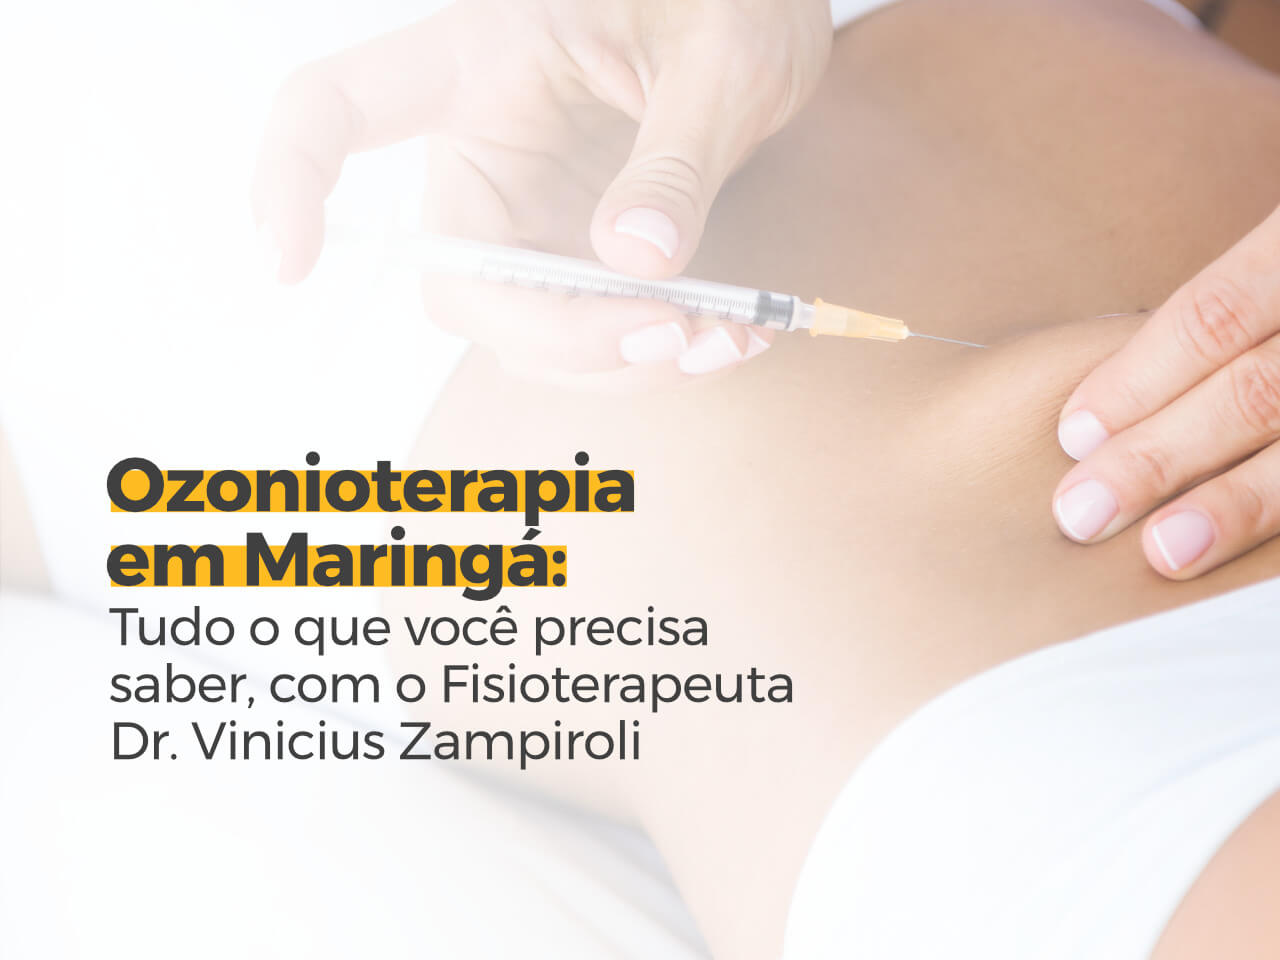 Ozonioterapia em Maringá: Tudo o que você precisa saber, com o Fisioterapeuta Dr. Vinicius Zampiroli